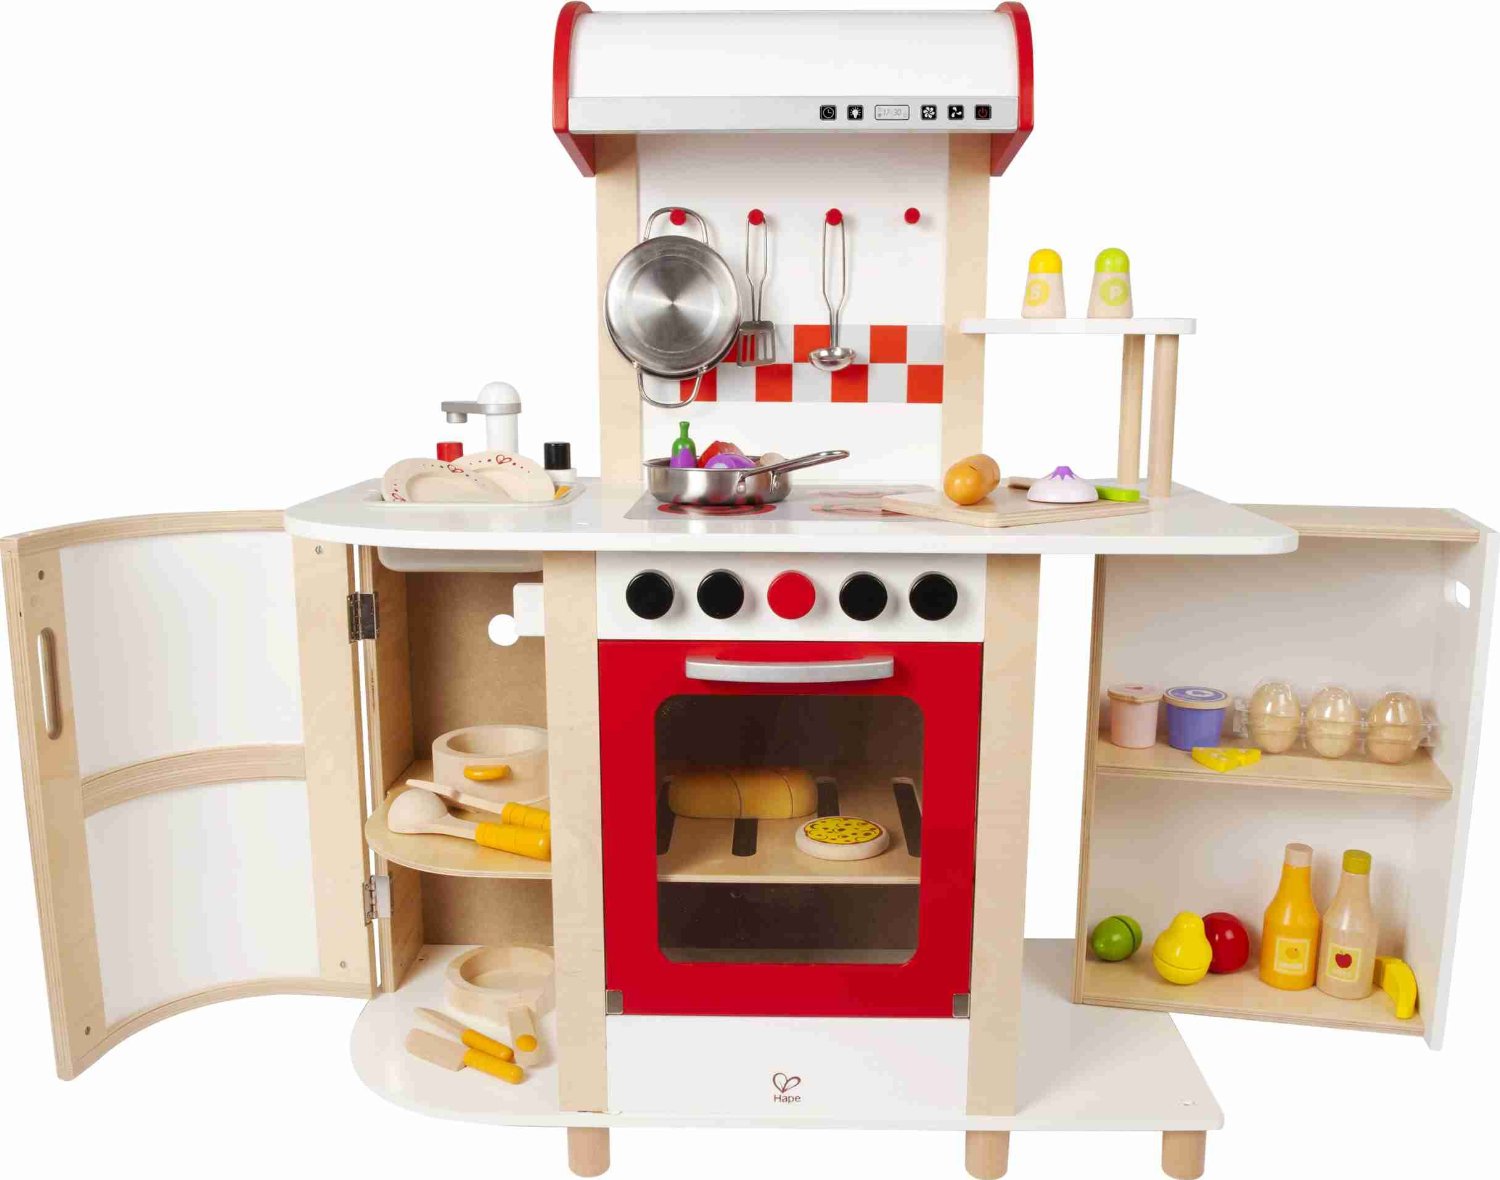 Spielküche Spielzeug Kinder Küche Lernspielzeug Kinderküche 13st Zubehör DHL 